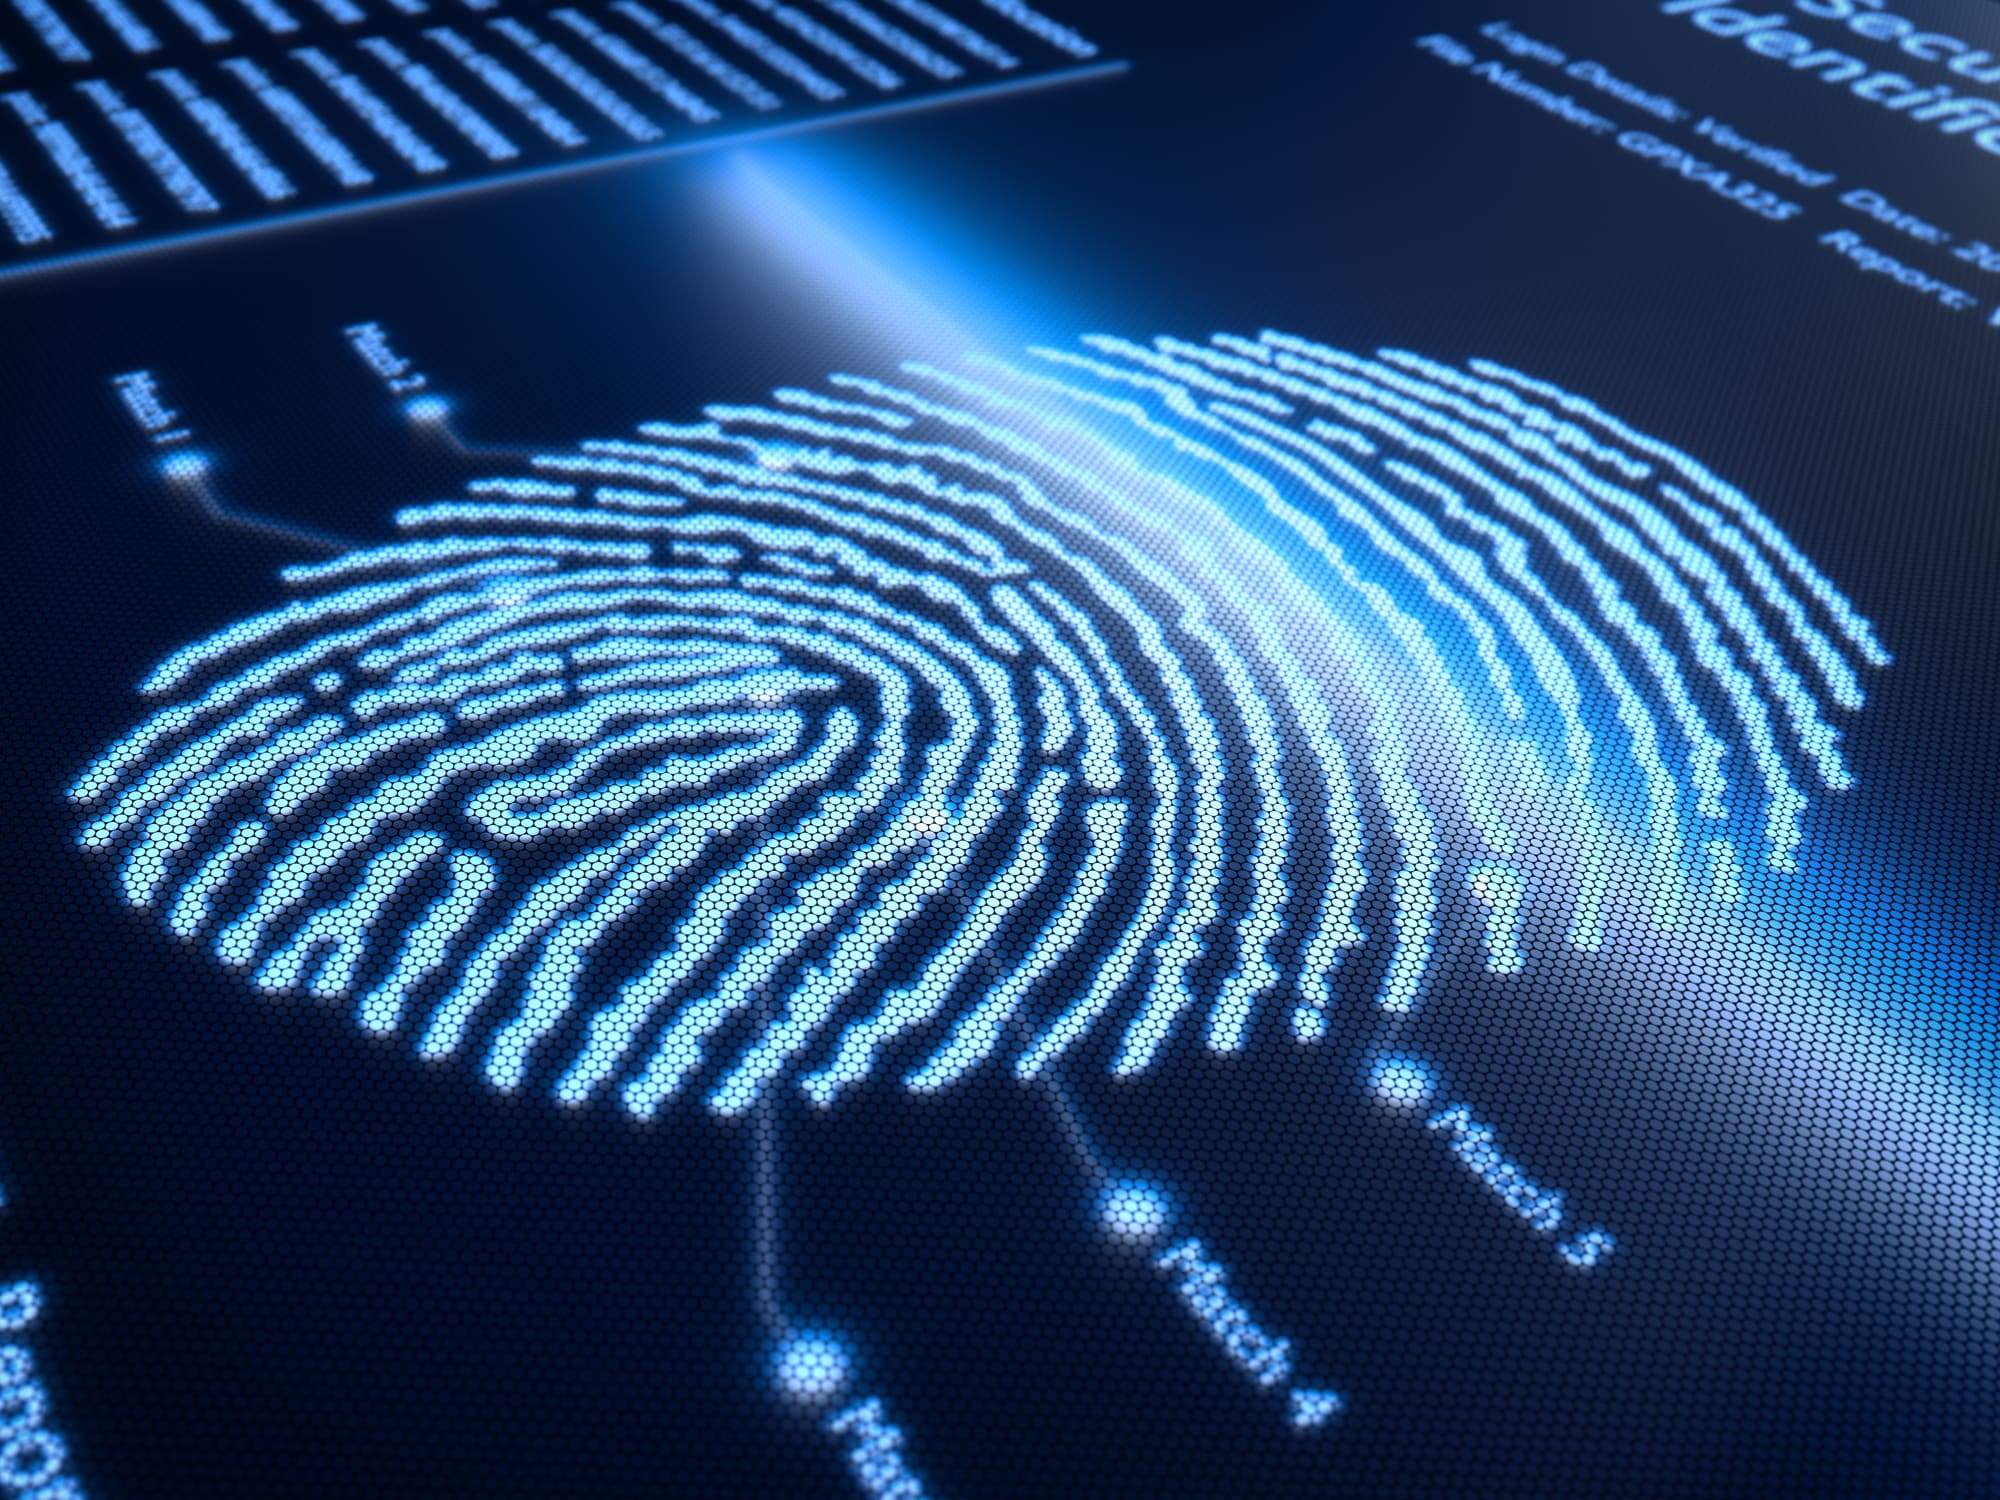 Straks verplichte vingerafdruk op ID-kaart: goede maatregel of schending van de privacy?